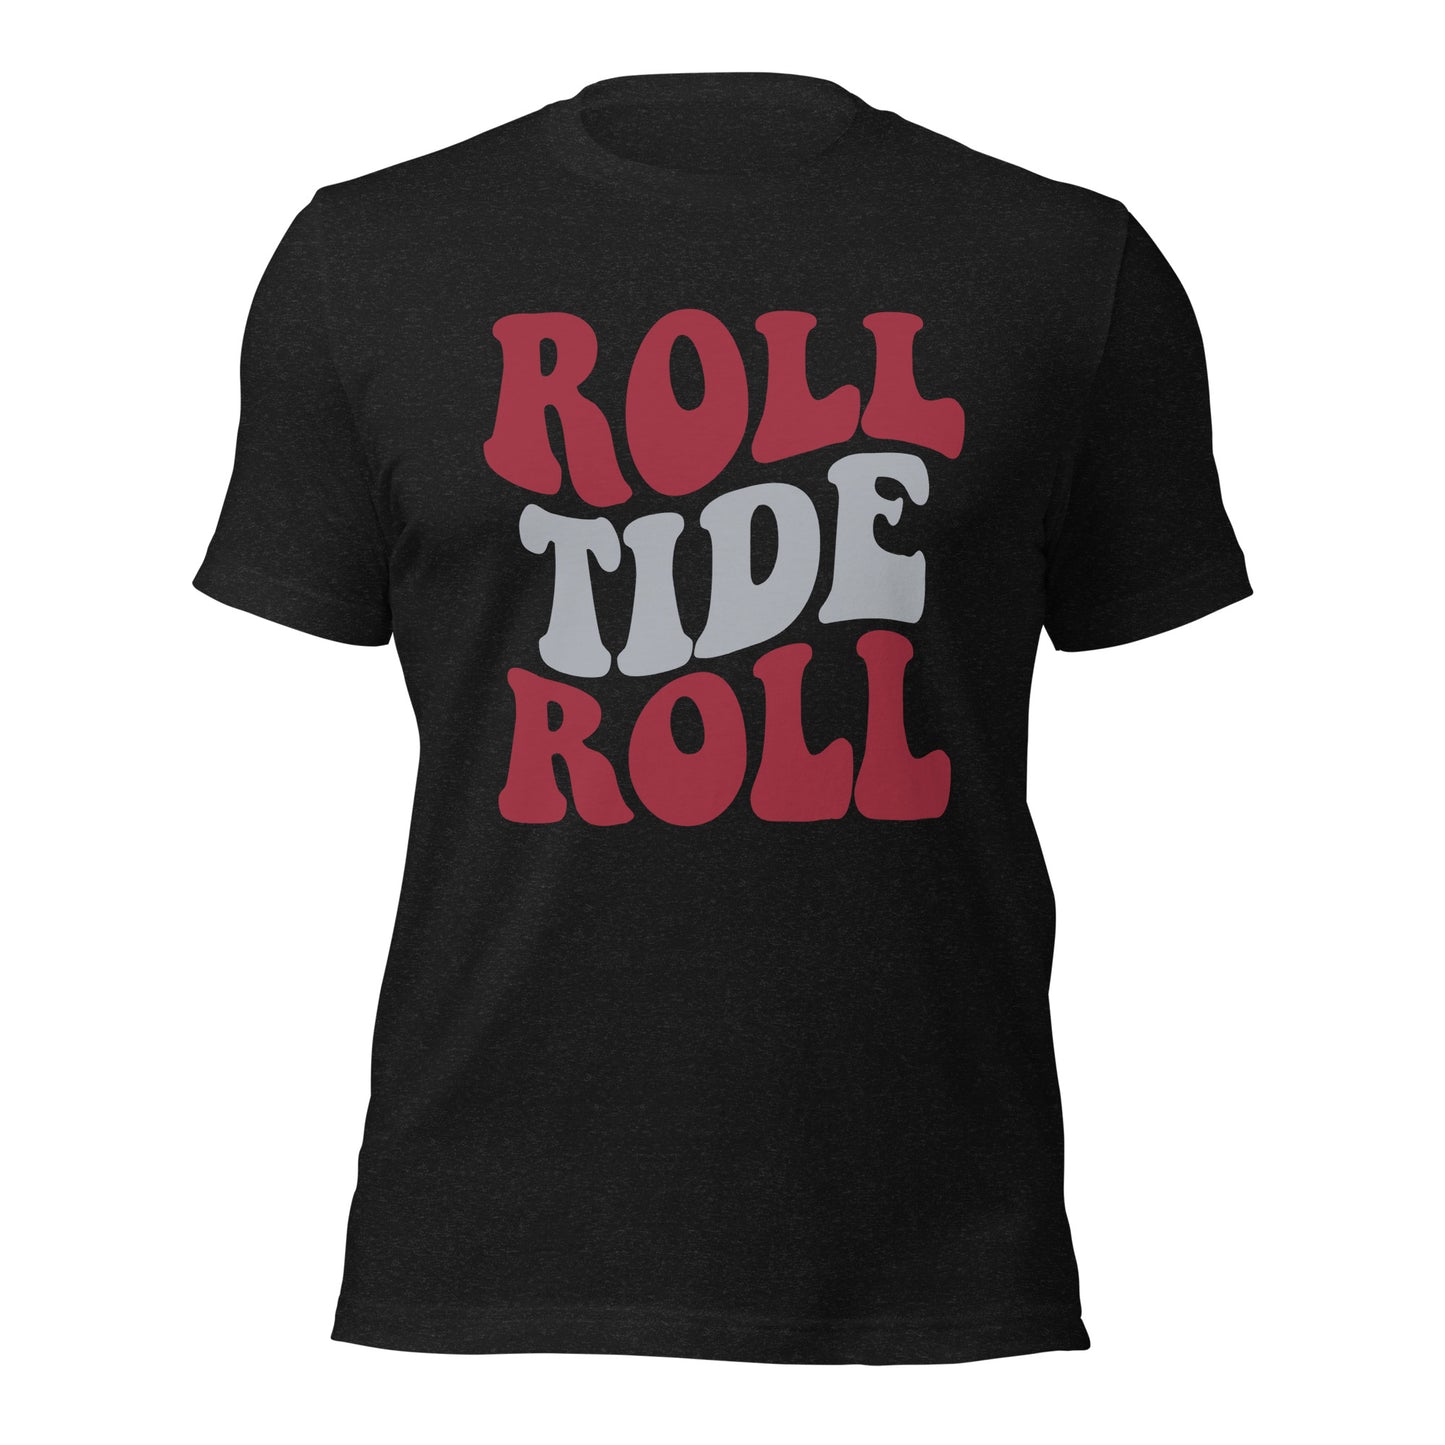 Roll Tide Roll t-shirt